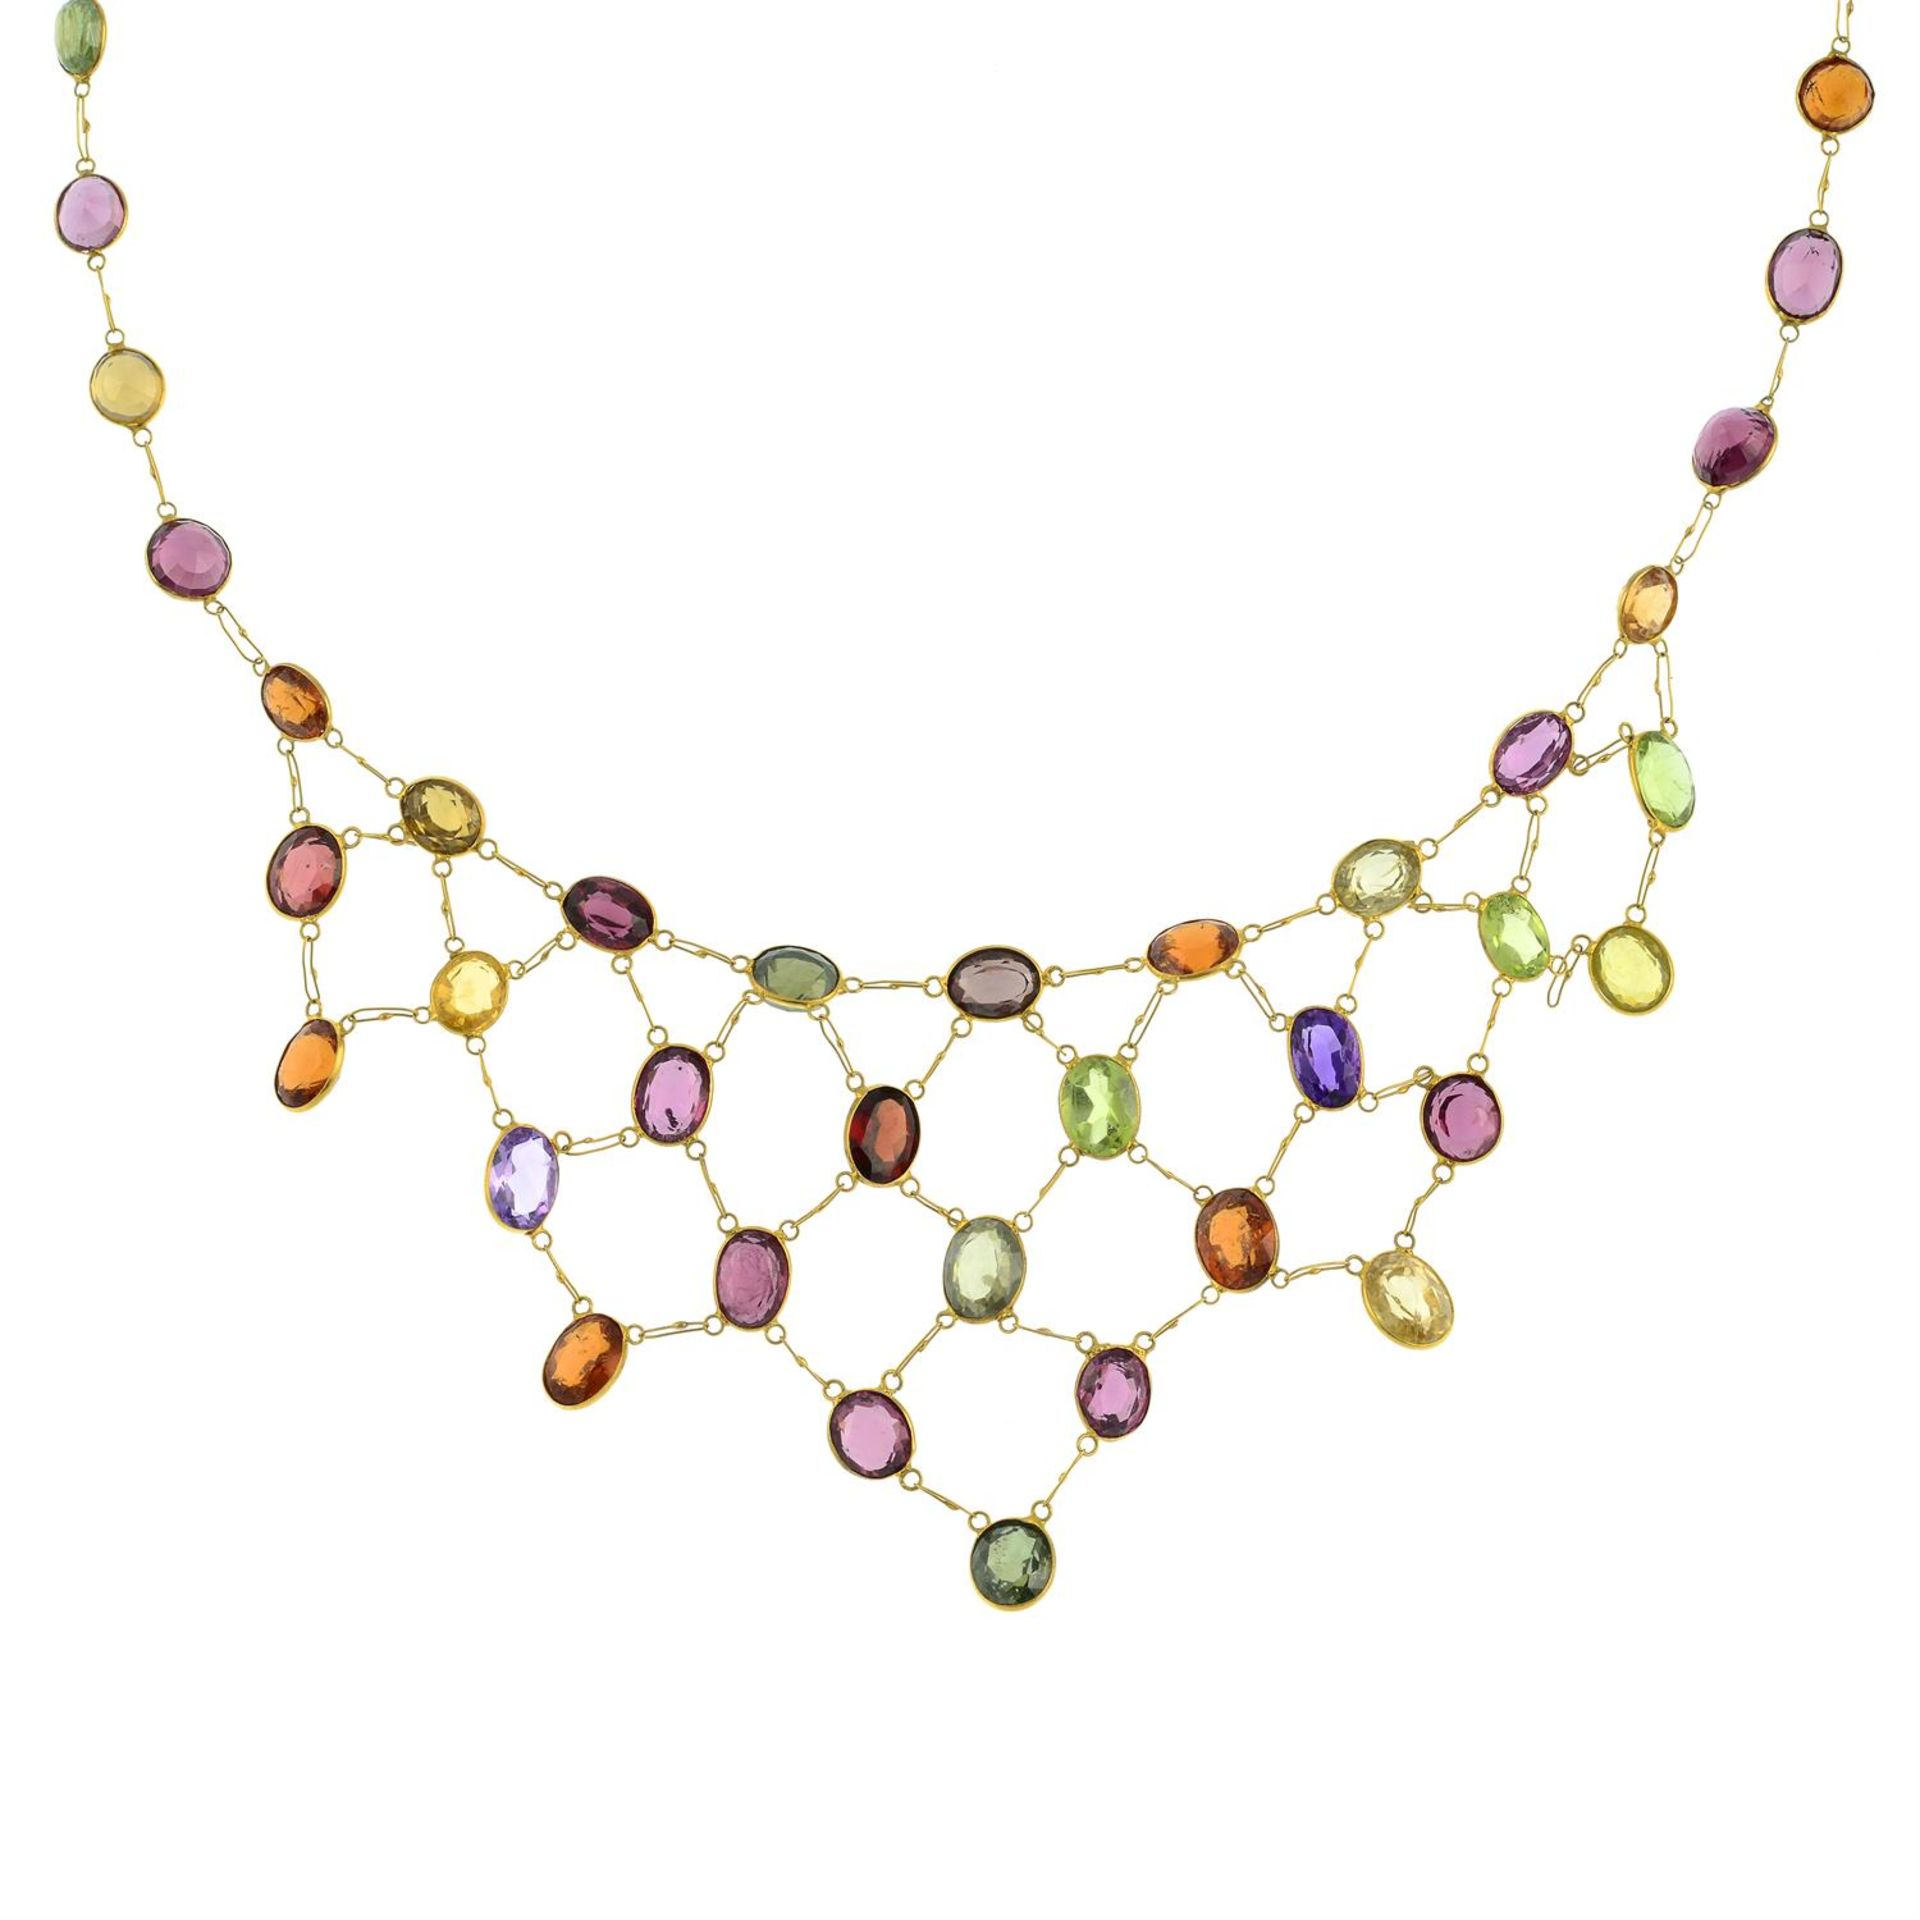 A multi-gem fringe necklace.